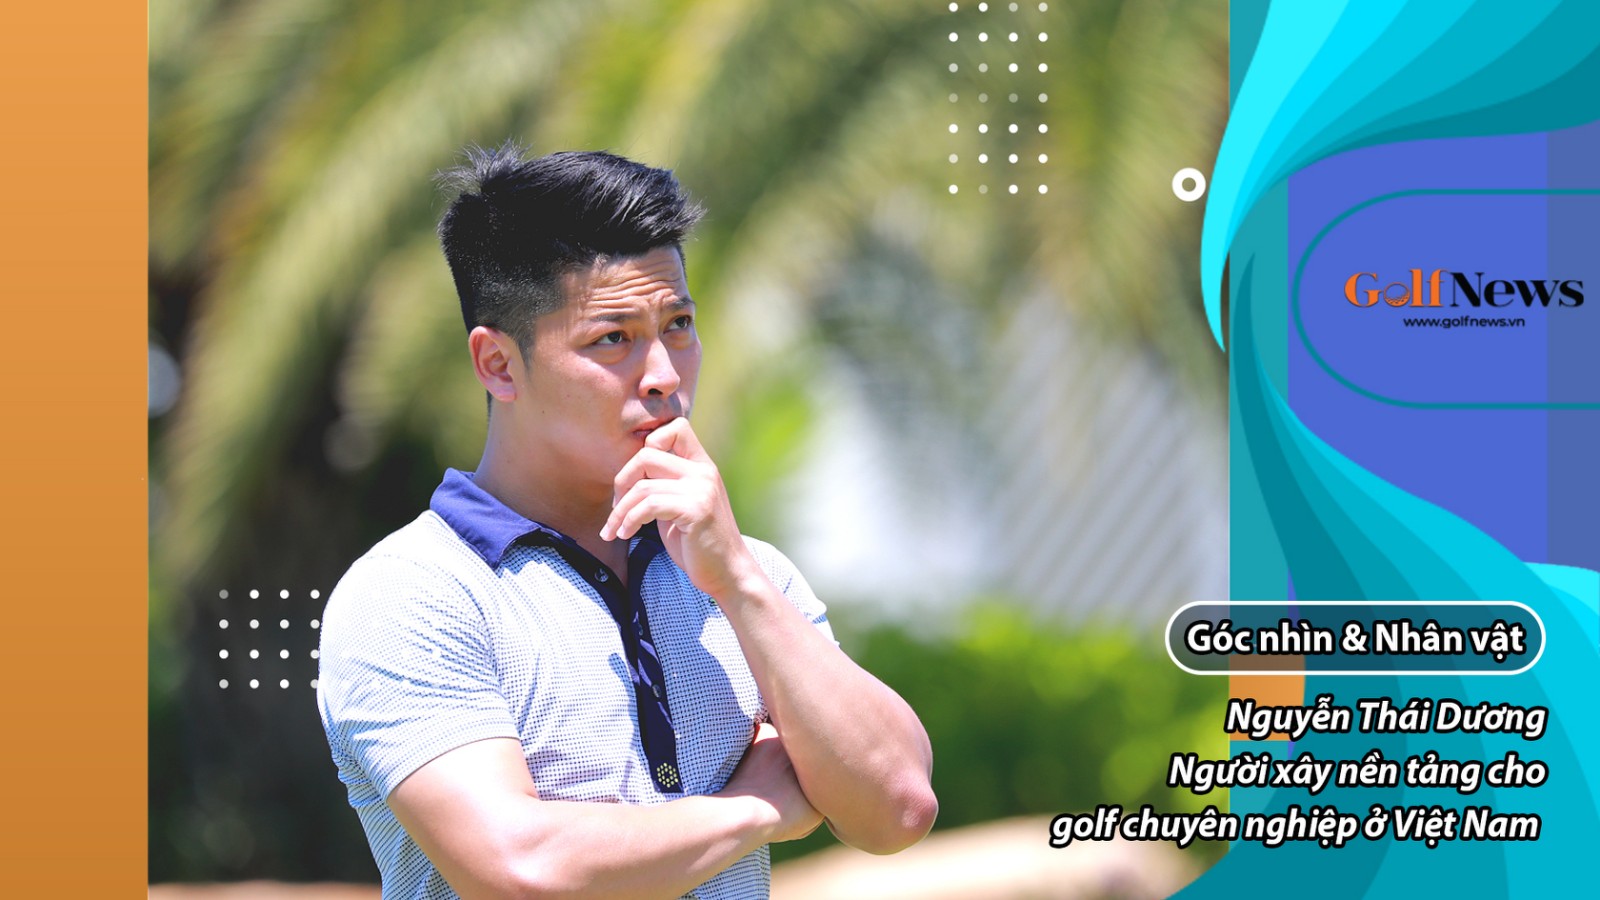 Nguyễn Thái Dương – Người xây nền tảng cho golf chuyên nghiệp ở Việt Nam